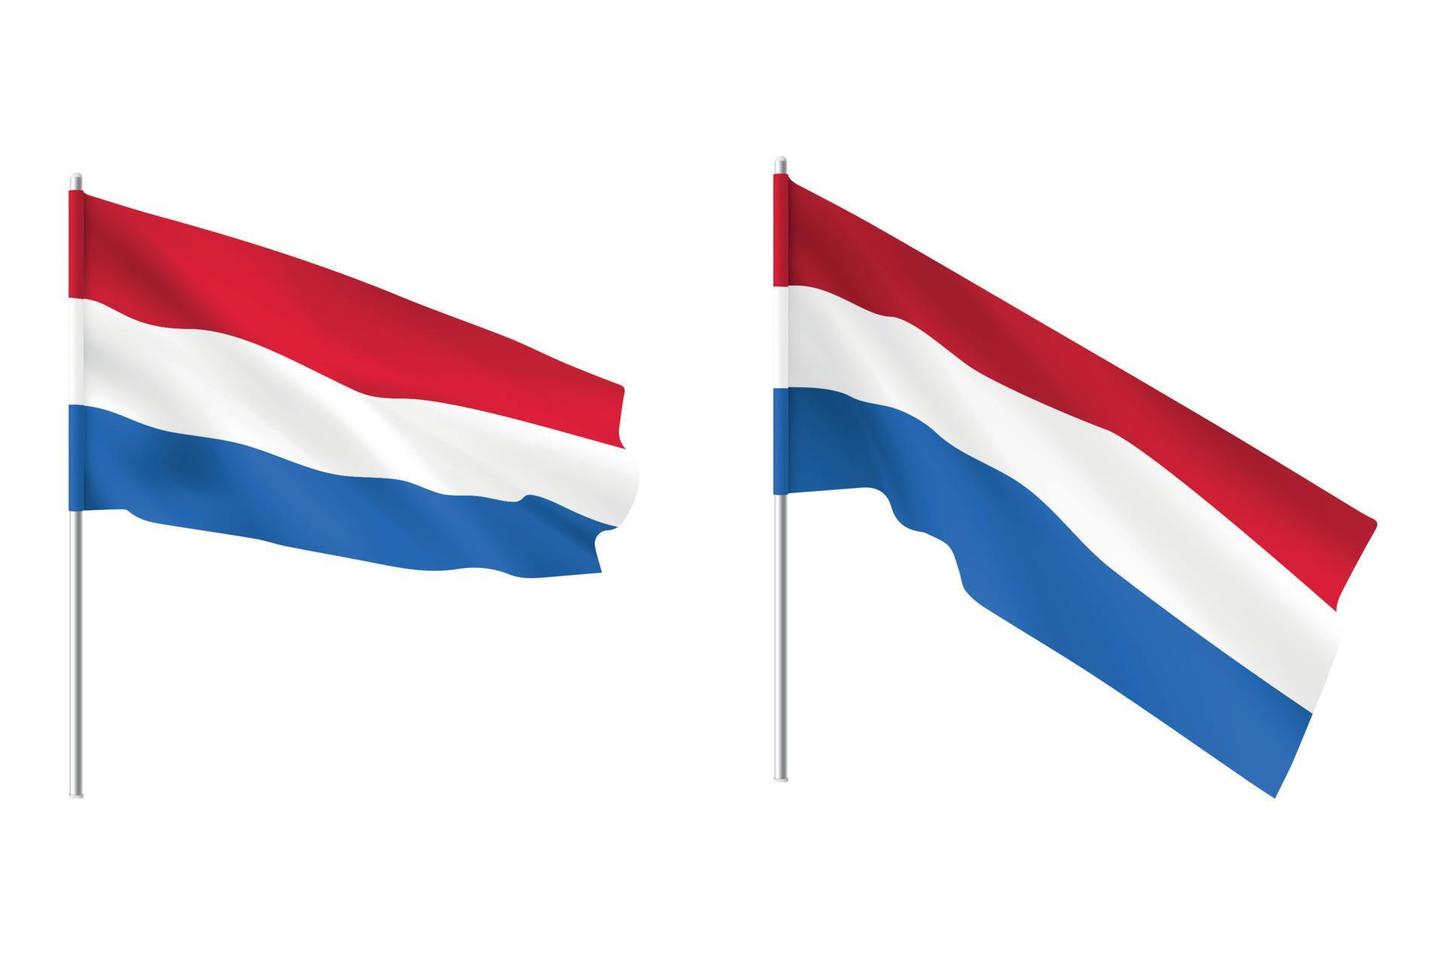 nederlandse vlaggen. set van nationale realistische nederlandse vlaggen. vector